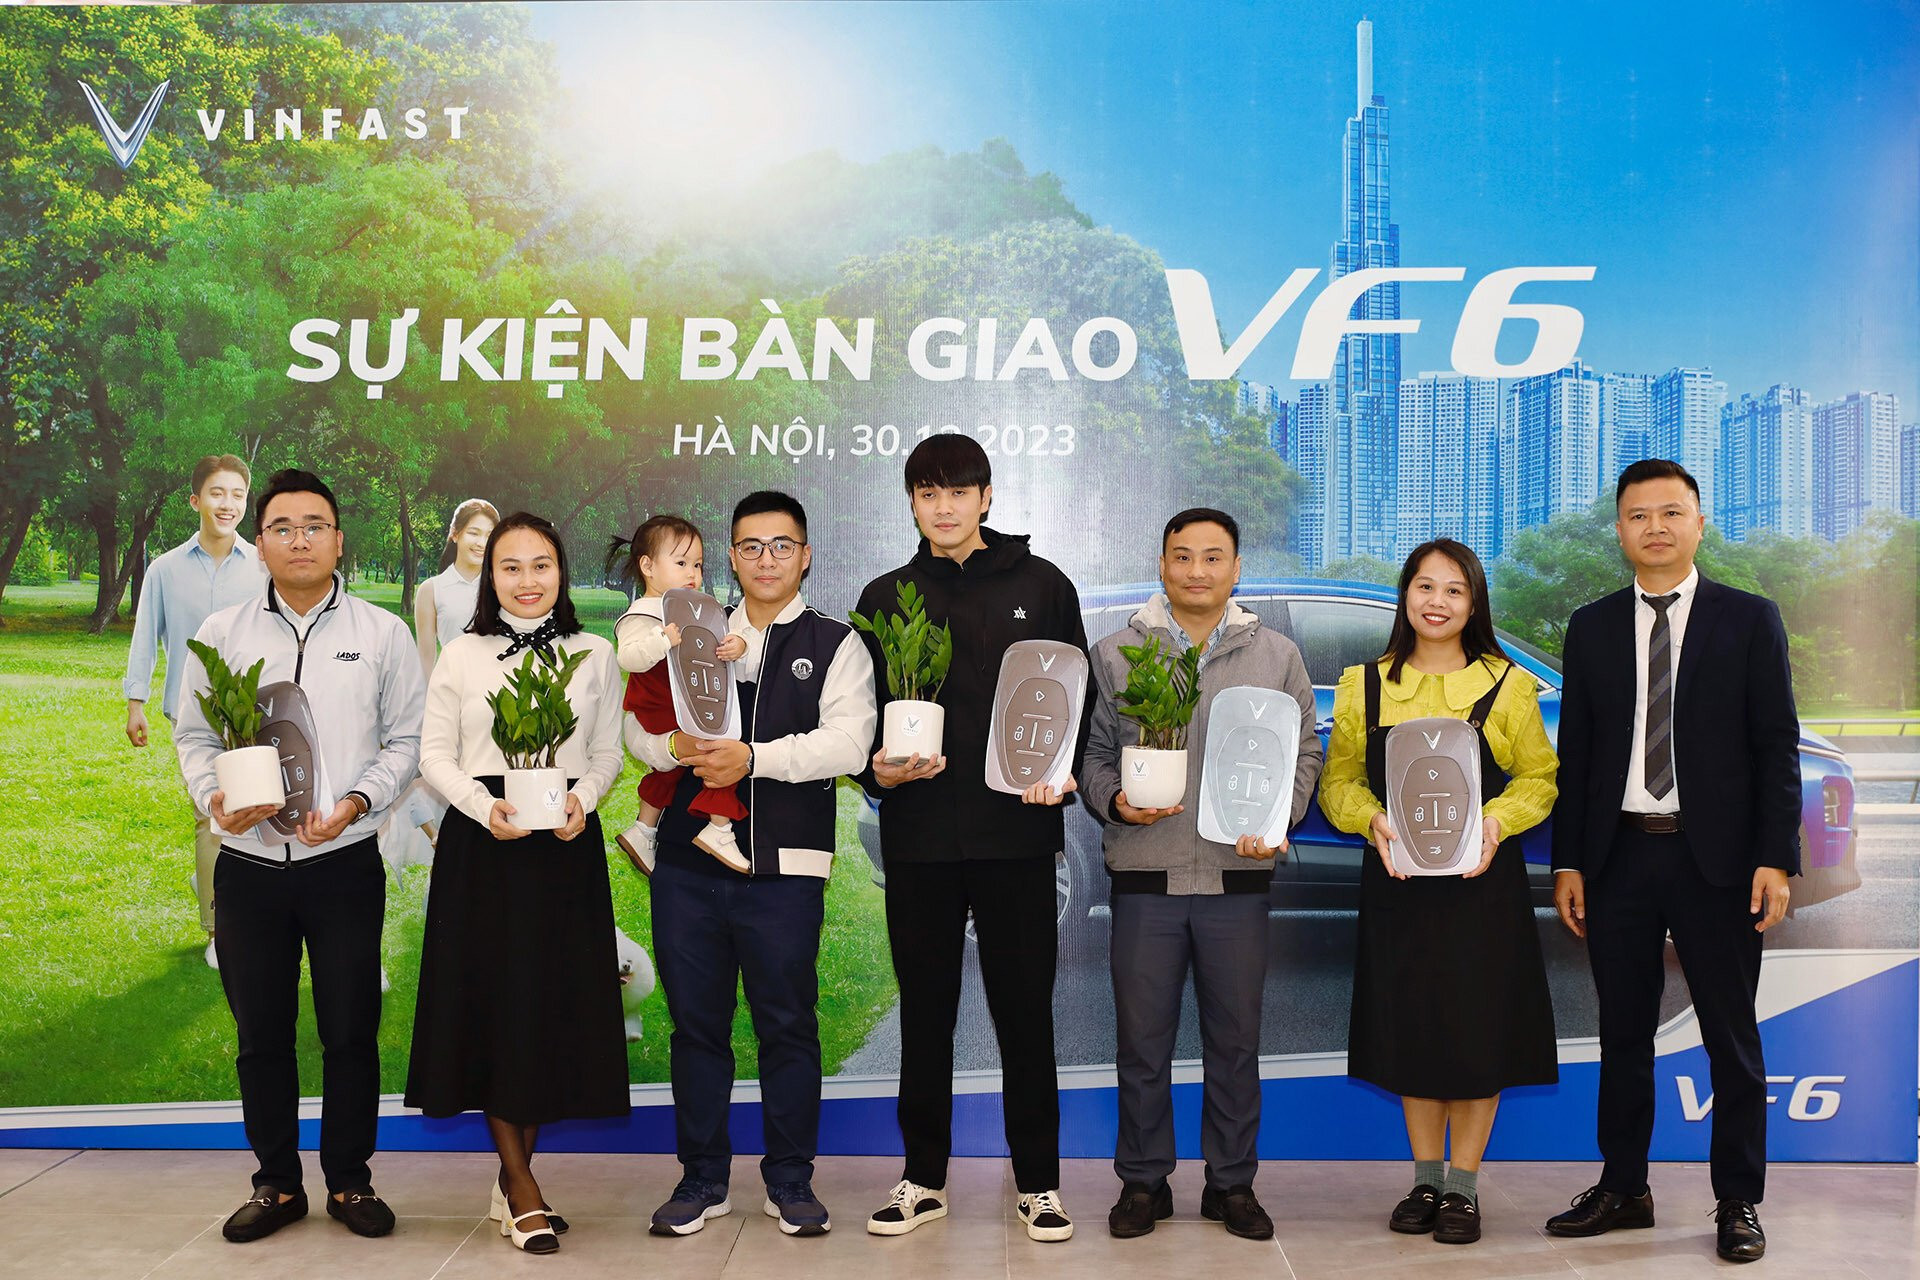 Đại diện VinFast tặng quà cho những khách hàng đầu tiên nhận VF 6 tại Hà Nội.